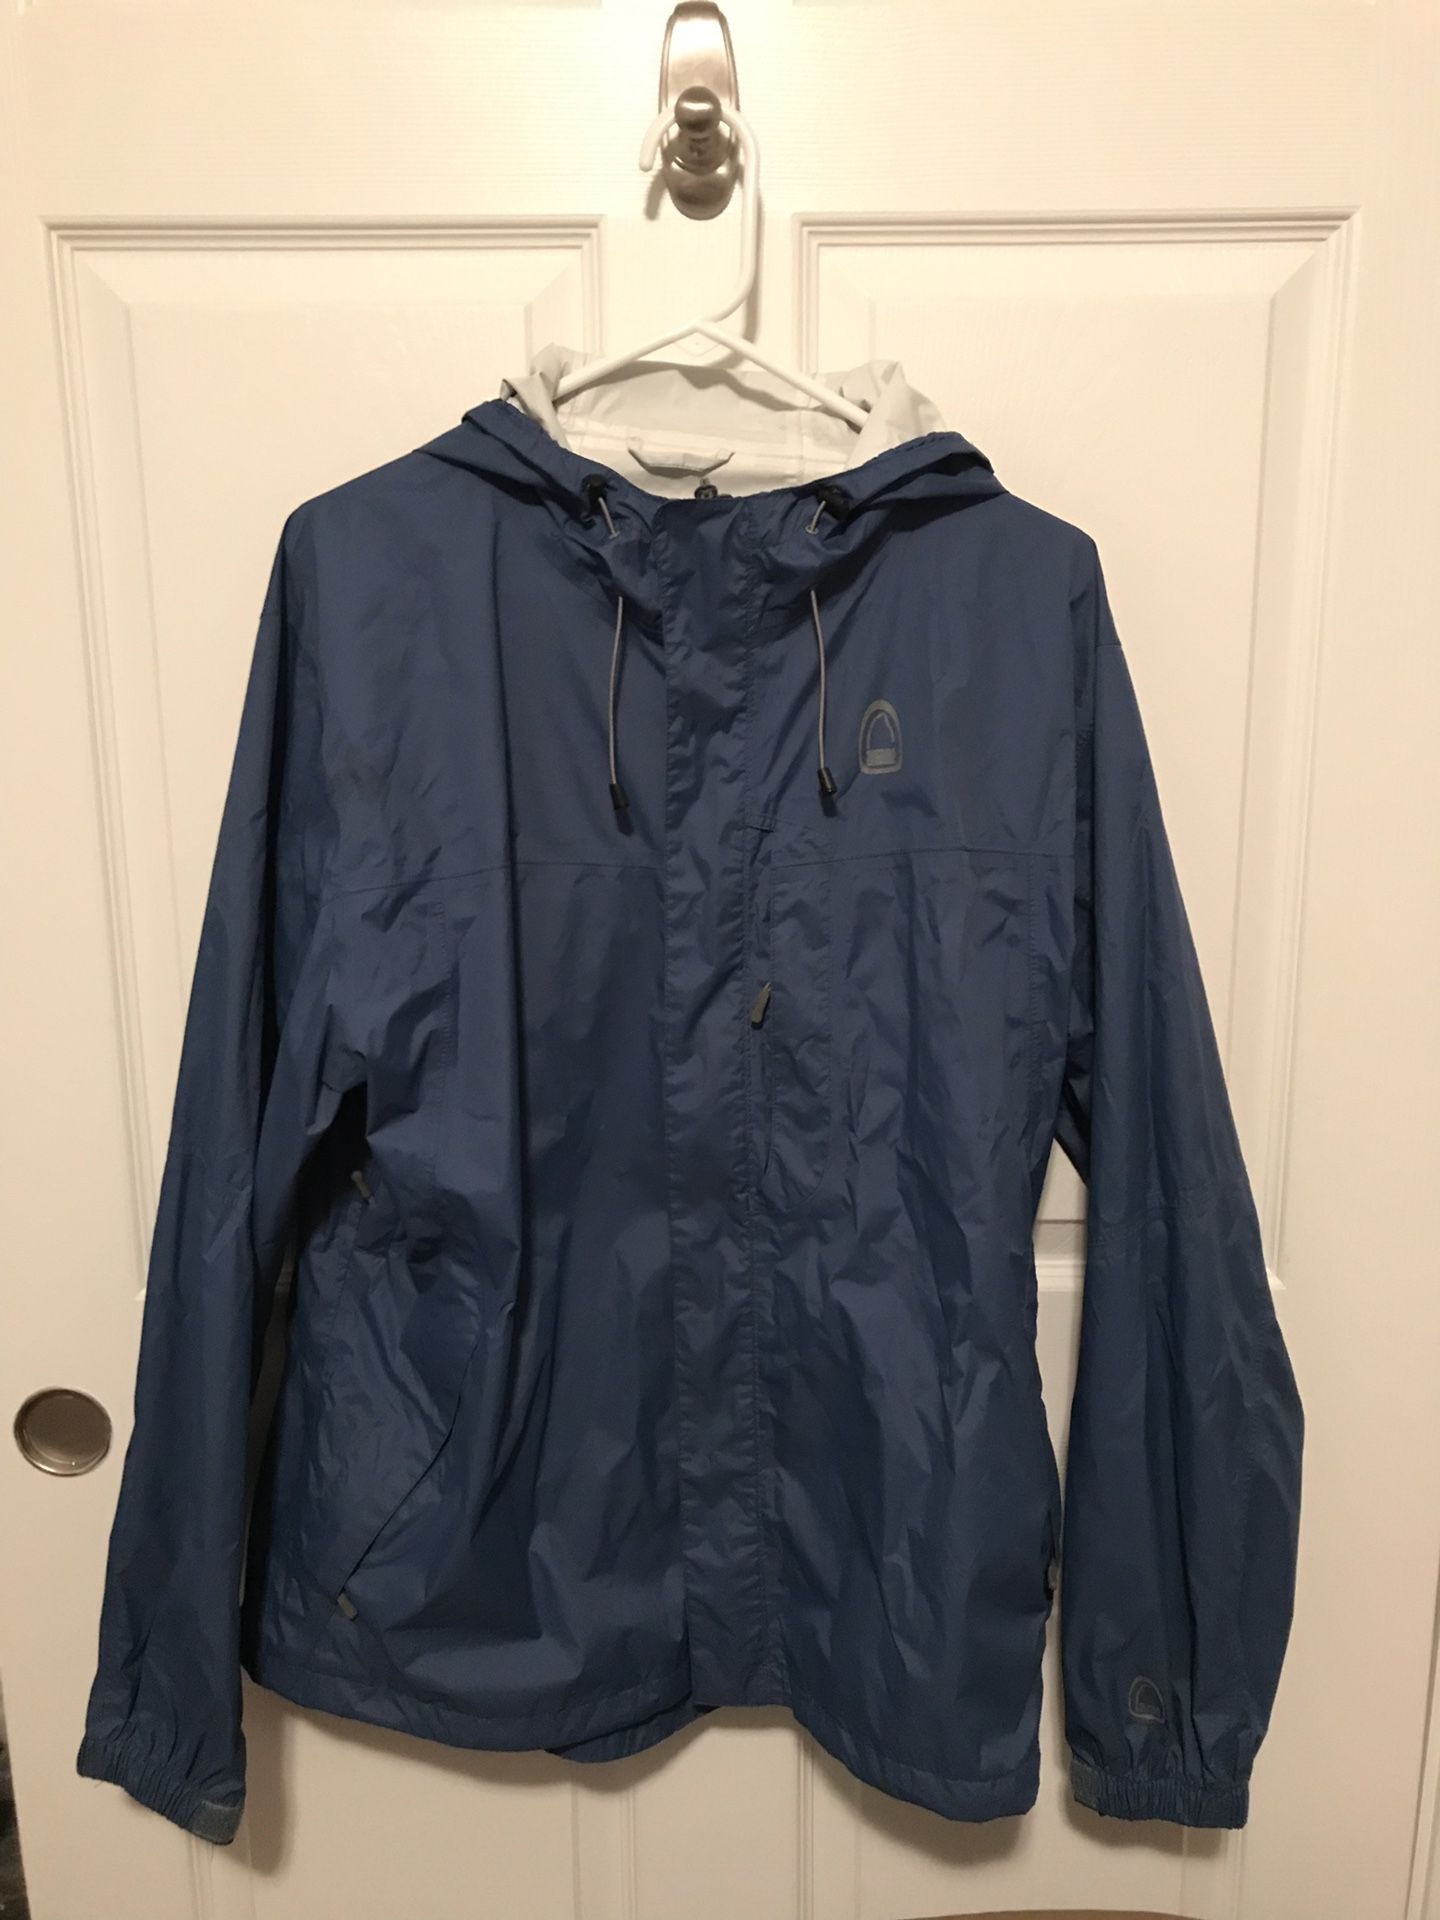 Men’s Sierra Designs Rain Jacket